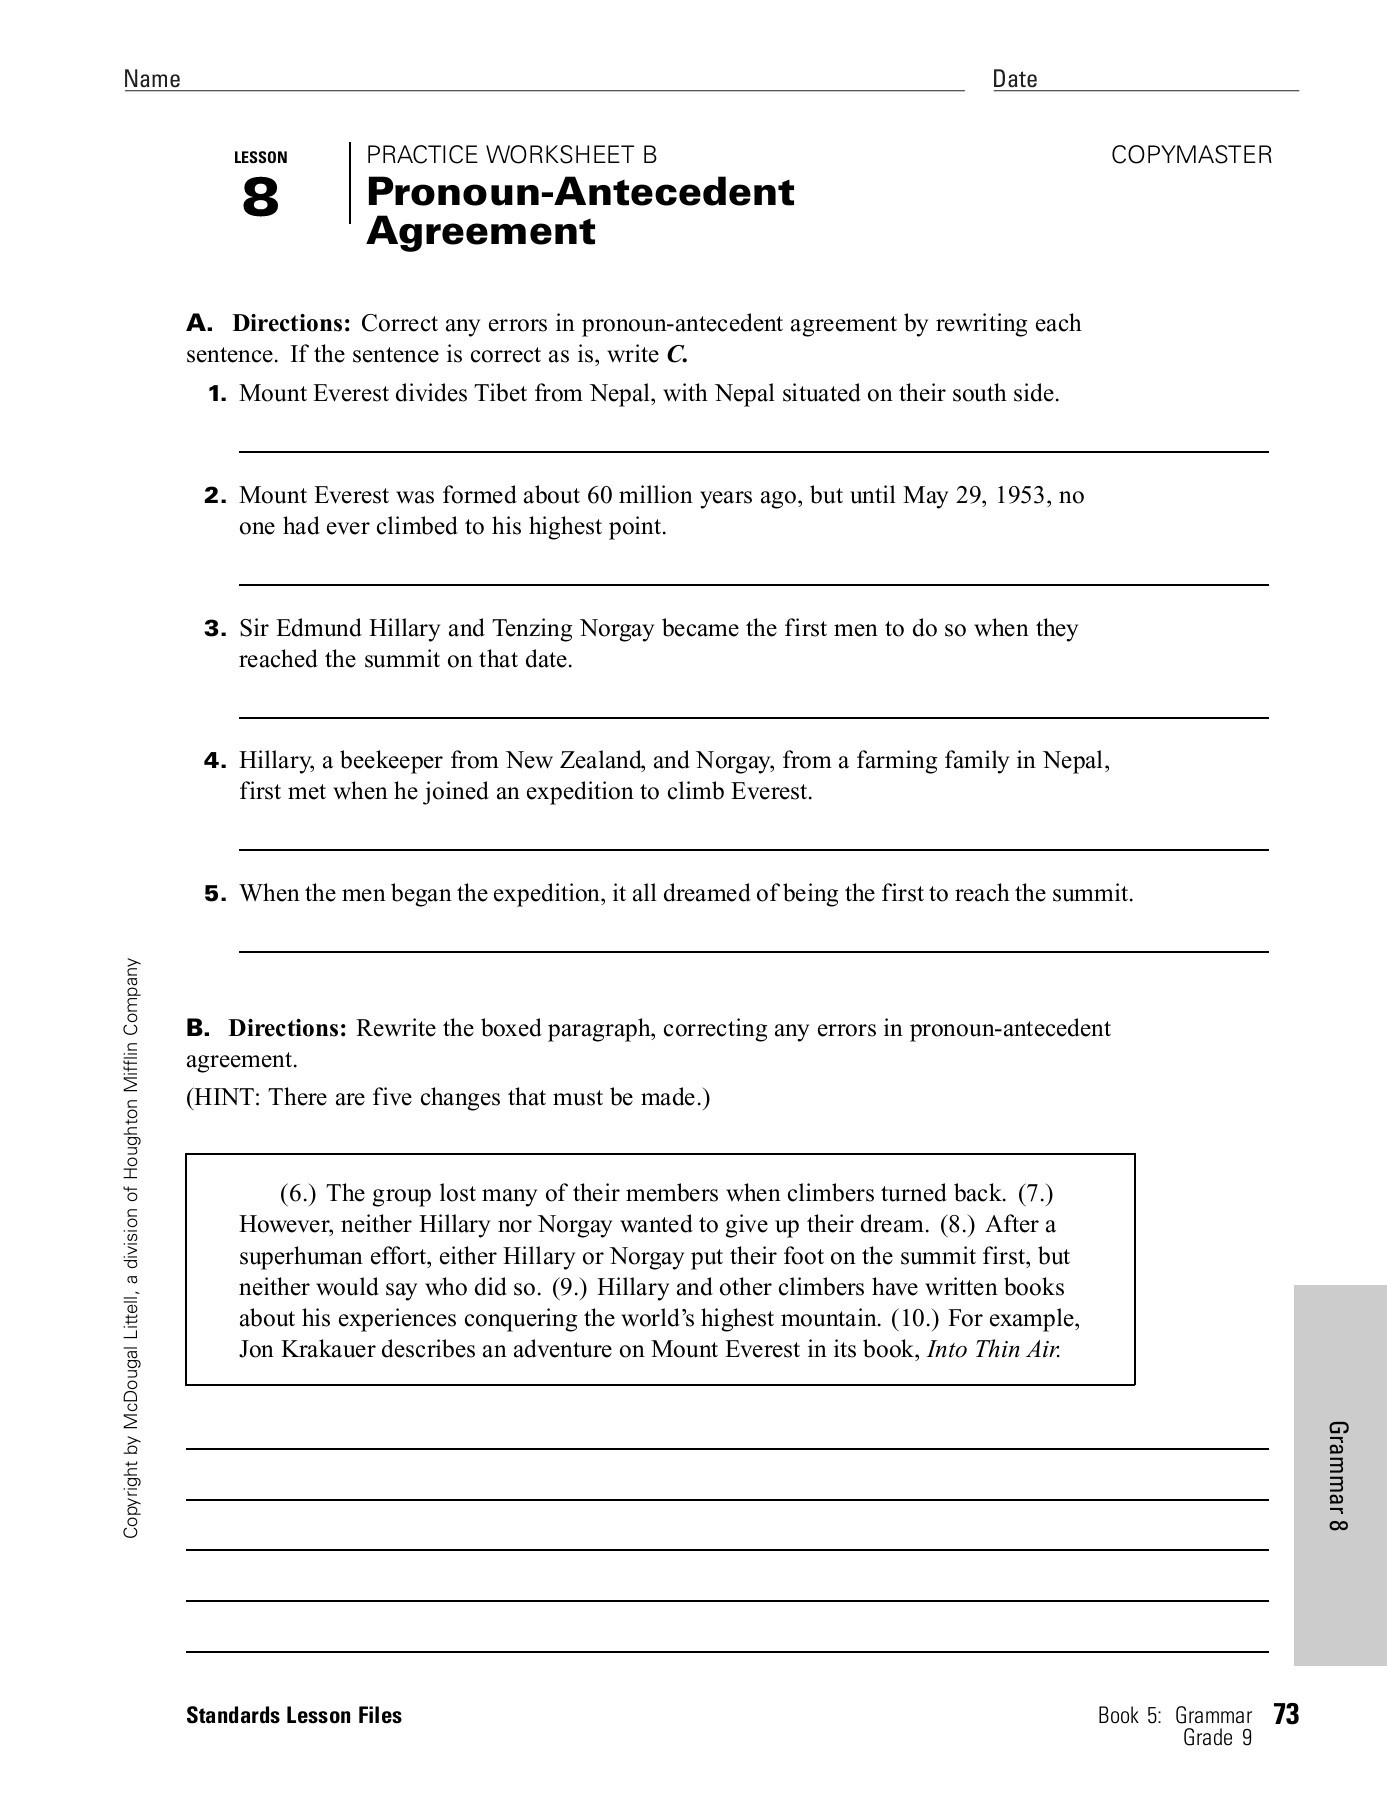 Pronoun Antecedent Agreement Worksheet Pronoun and Antecedent Agreement Worksheet